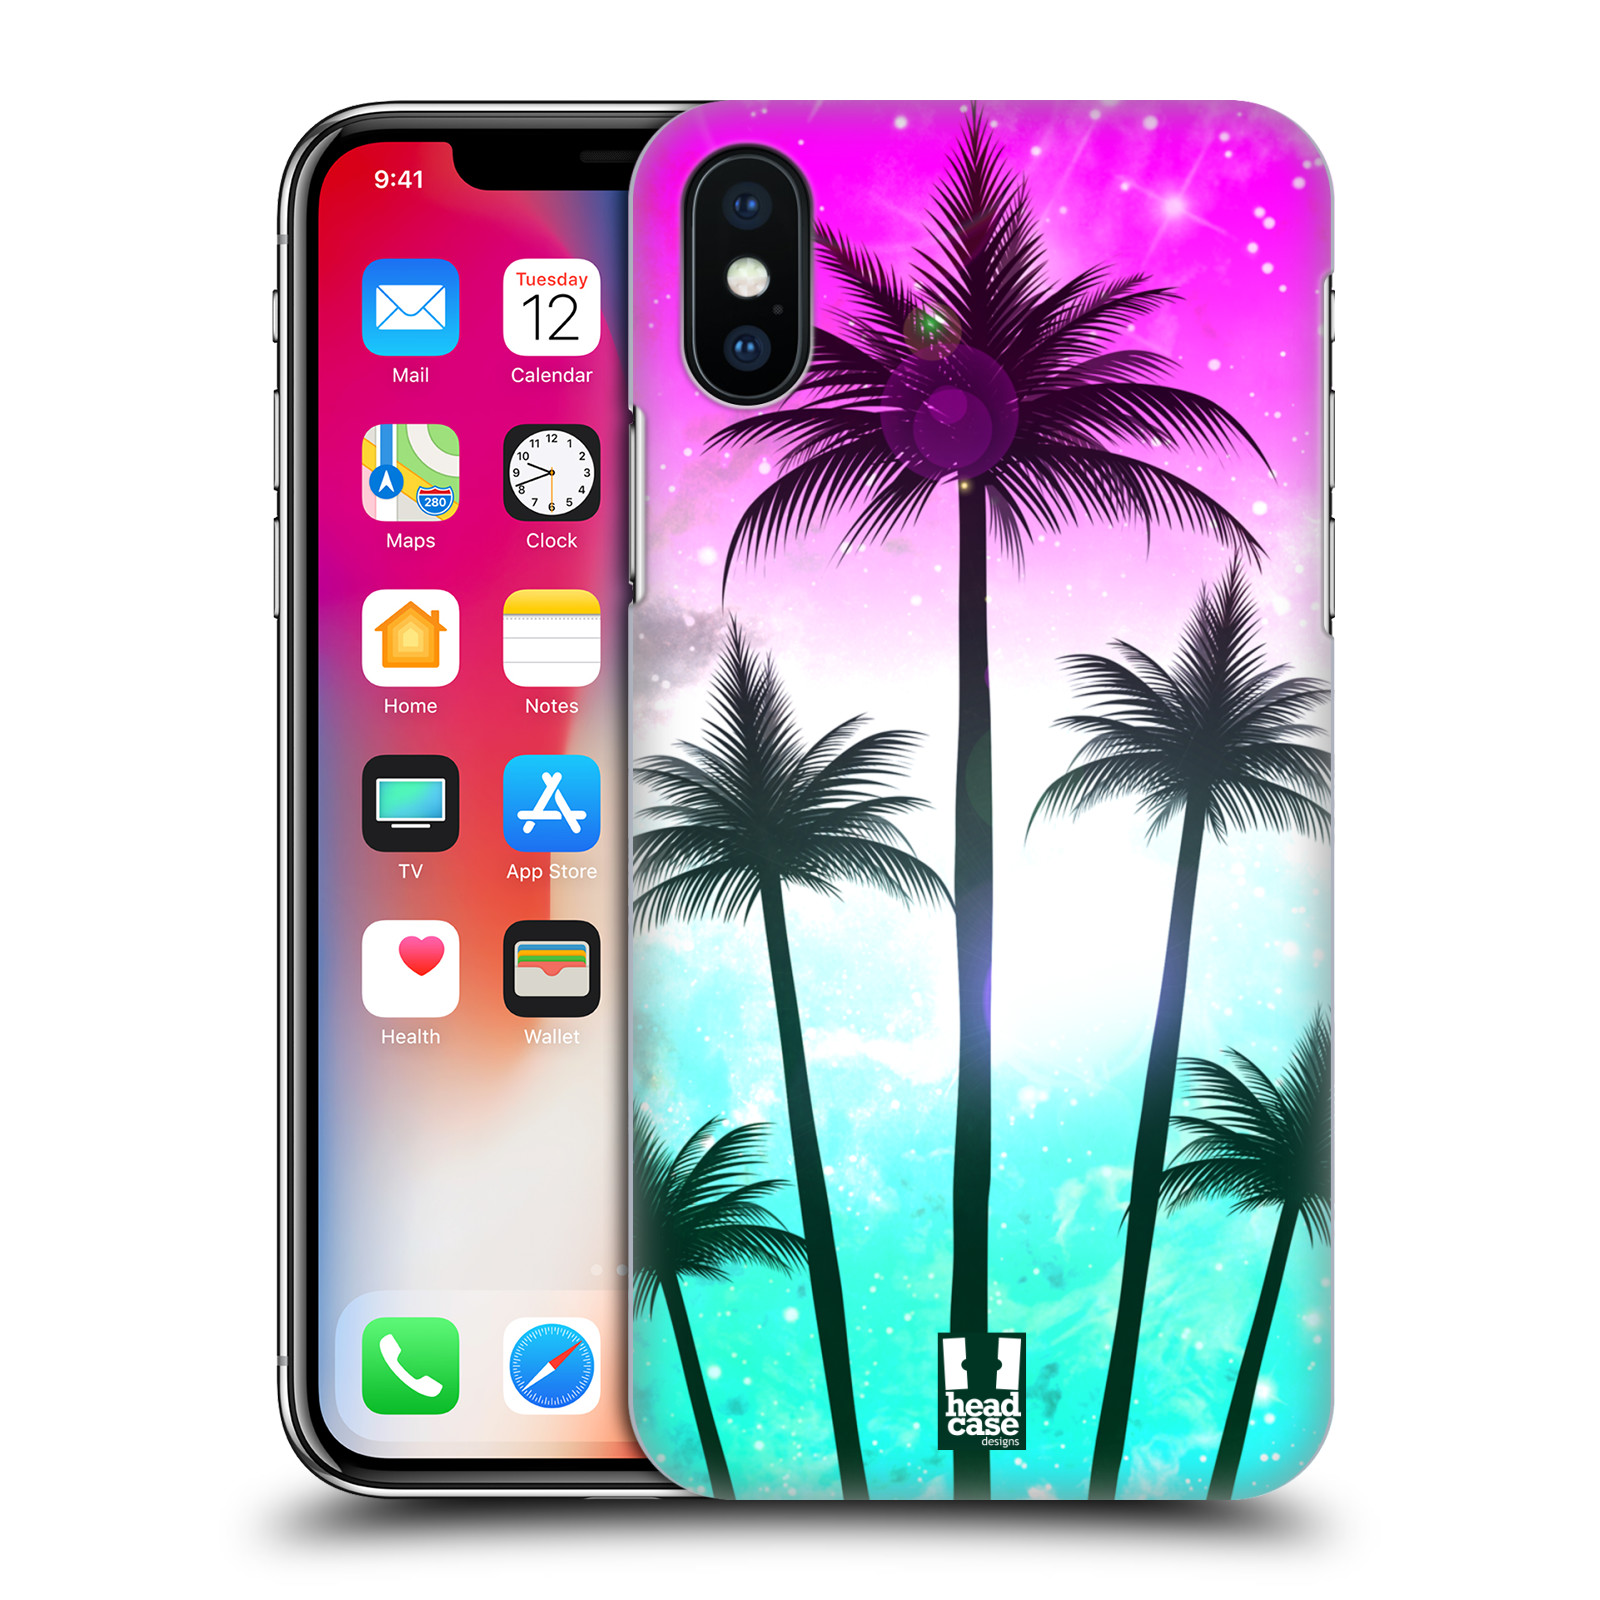 HEAD CASE plastový obal na mobil Apple Iphone X / XS vzor Kreslený motiv silueta moře a palmy RŮŽOVÁ A TYRKYS